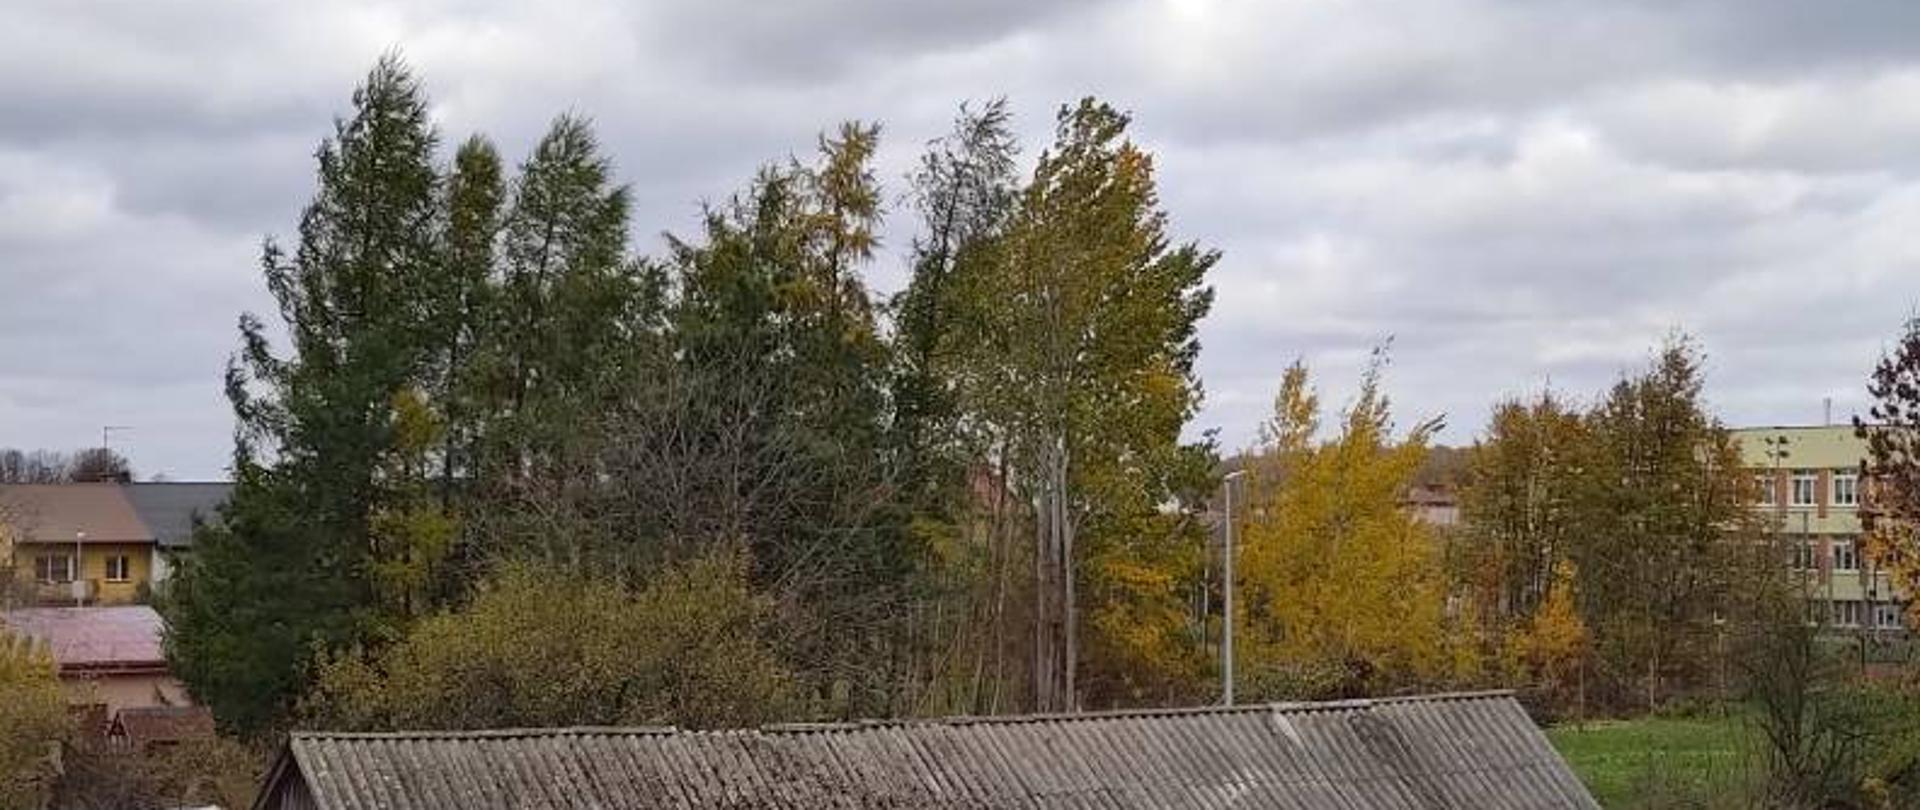 Zdjęcie przedstawia widok z okna Komendy Powiatowej Państwowej Straży Pożarnej w Zambrowie od strony pomieszczenia Wydziału Kontrolno-Rozpoznawczego. Na zdjęciu widać stary eternitowy dach drewnianego budynku oraz uginające się w wyniku działania silnego wiatru wysokie drzewa. Zdjęcie wykonano w pochmurny, wietrzny dzień. 